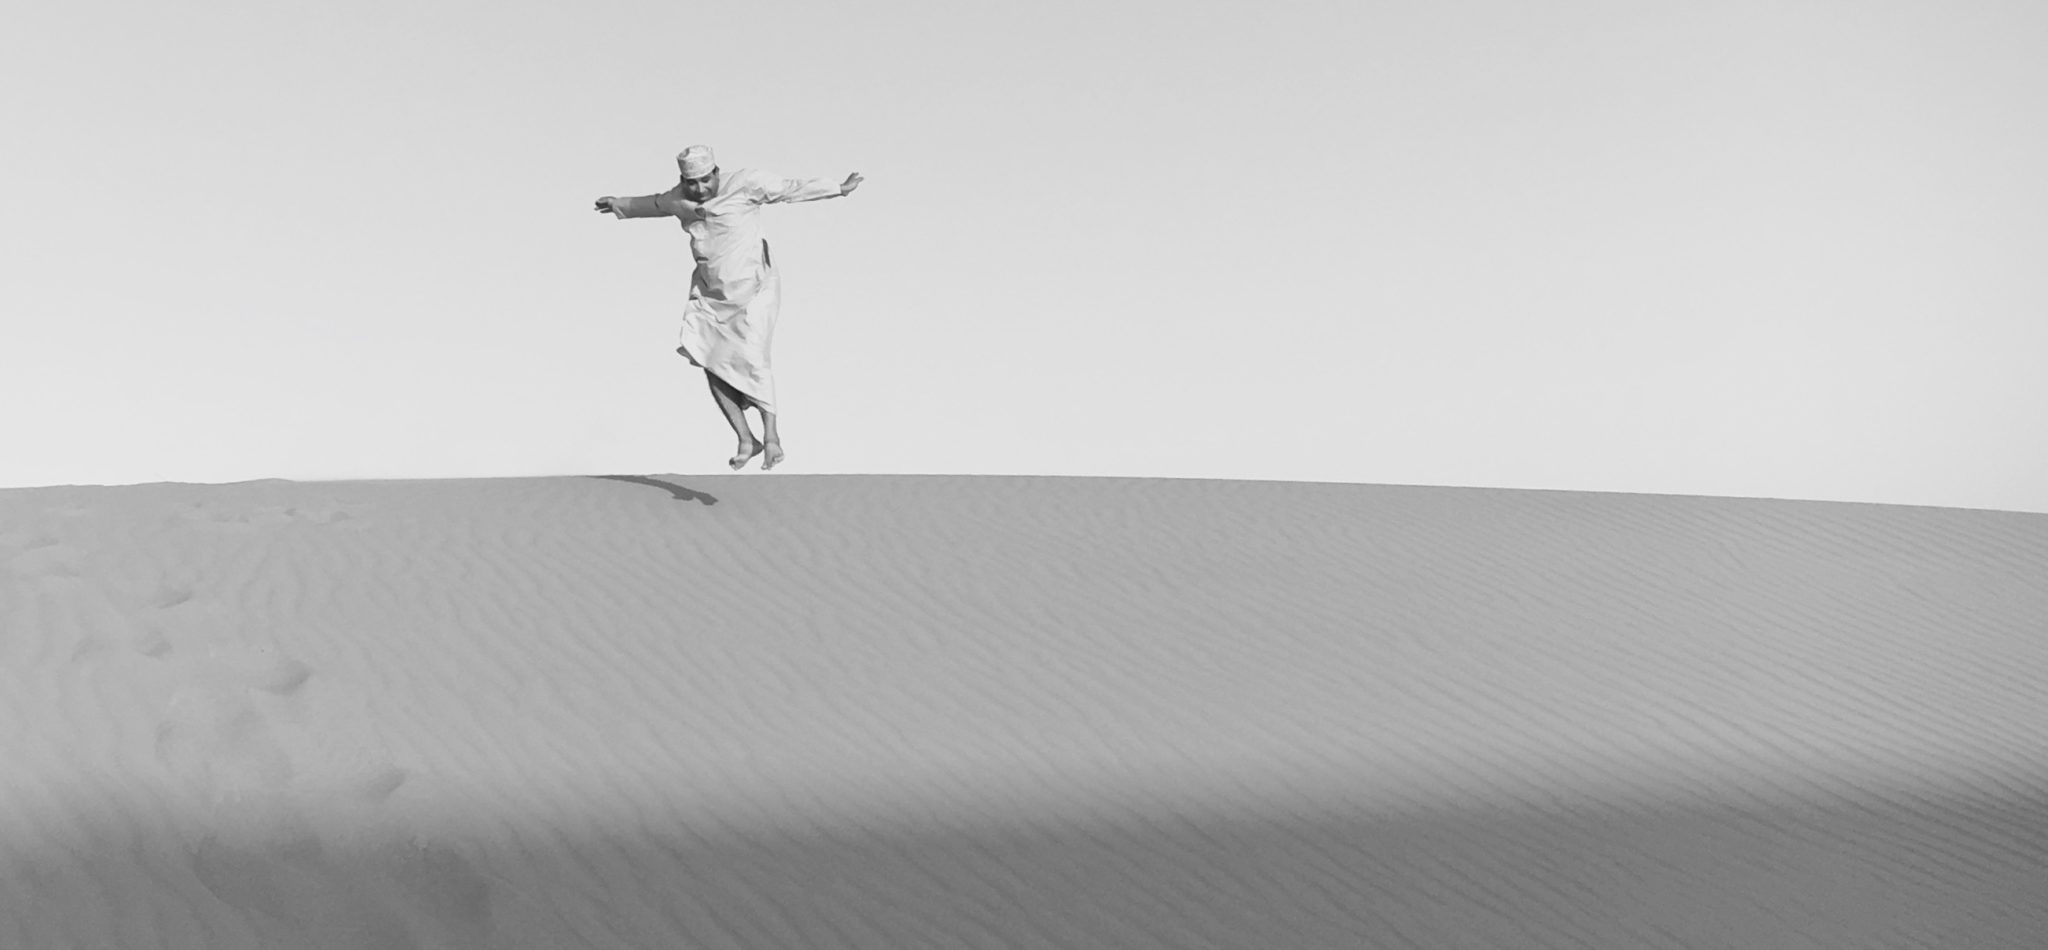 Reise in Oman im Orient. Deutschsprachiger Reiseleiter in traditioneller Kleidung springt über eine Sanddüne in der Wüste Wahiba Sands.